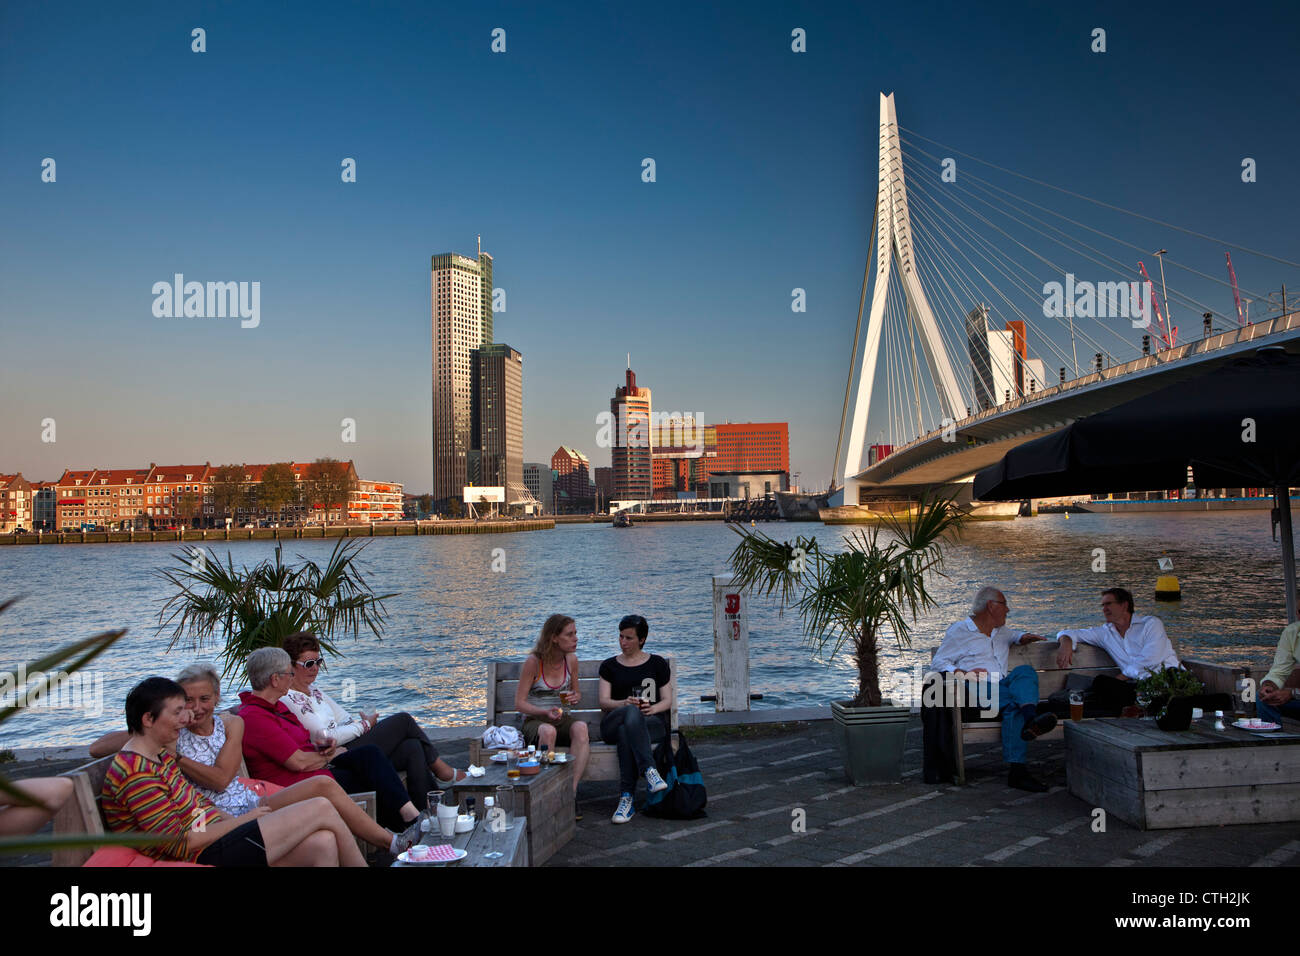 Die Niederlande, Rotterdam. Menschen entspannen im Café im Freien, in der Nähe von Brücke namens Erasmusbrücke, Architekten Ben van Berkel. Stockfoto